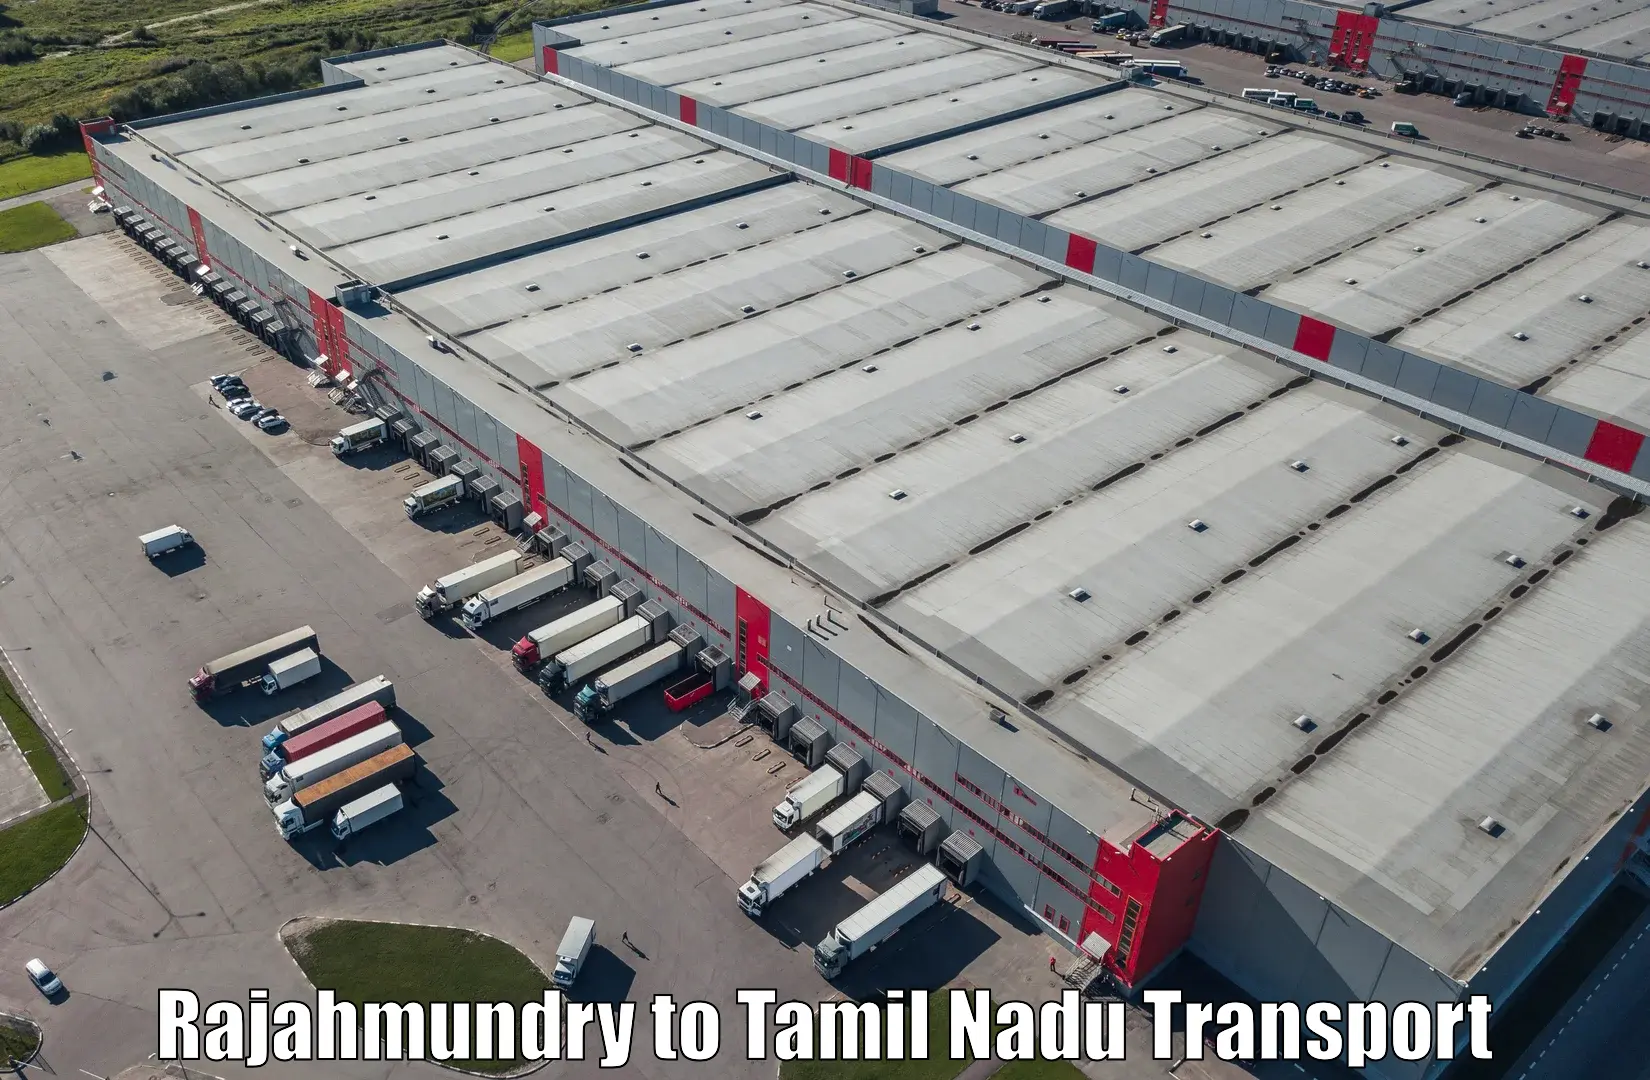 Land transport services in Rajahmundry to Udumalpet